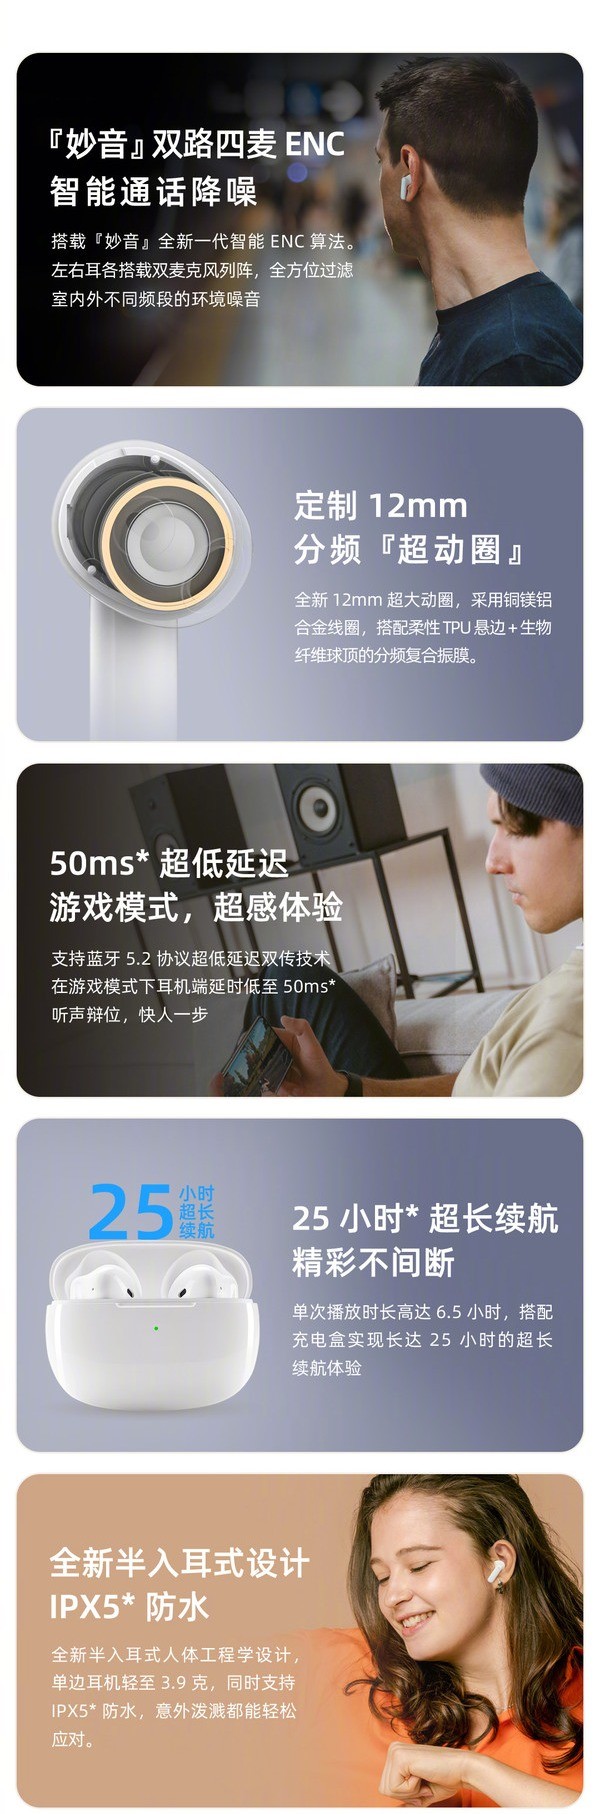 魅蓝 Blus Air 真无线耳机发布：半入耳设计、定制12mm动圈